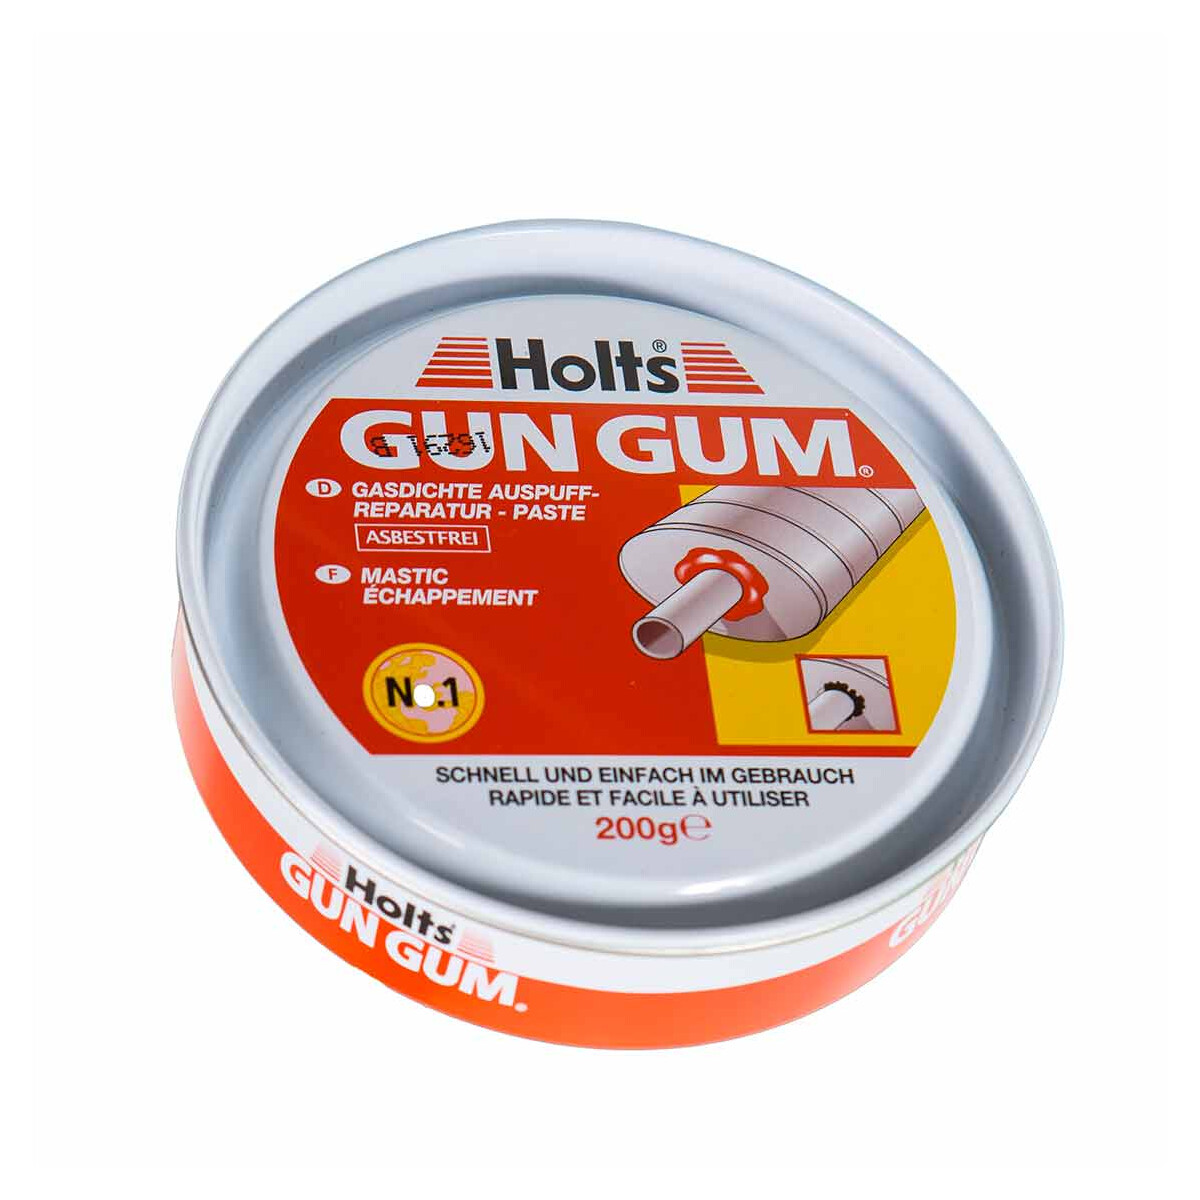 Dichtmasse für Auspuffanlagen Holts Gun Gum Flexi Wrap, 150 g - ATU